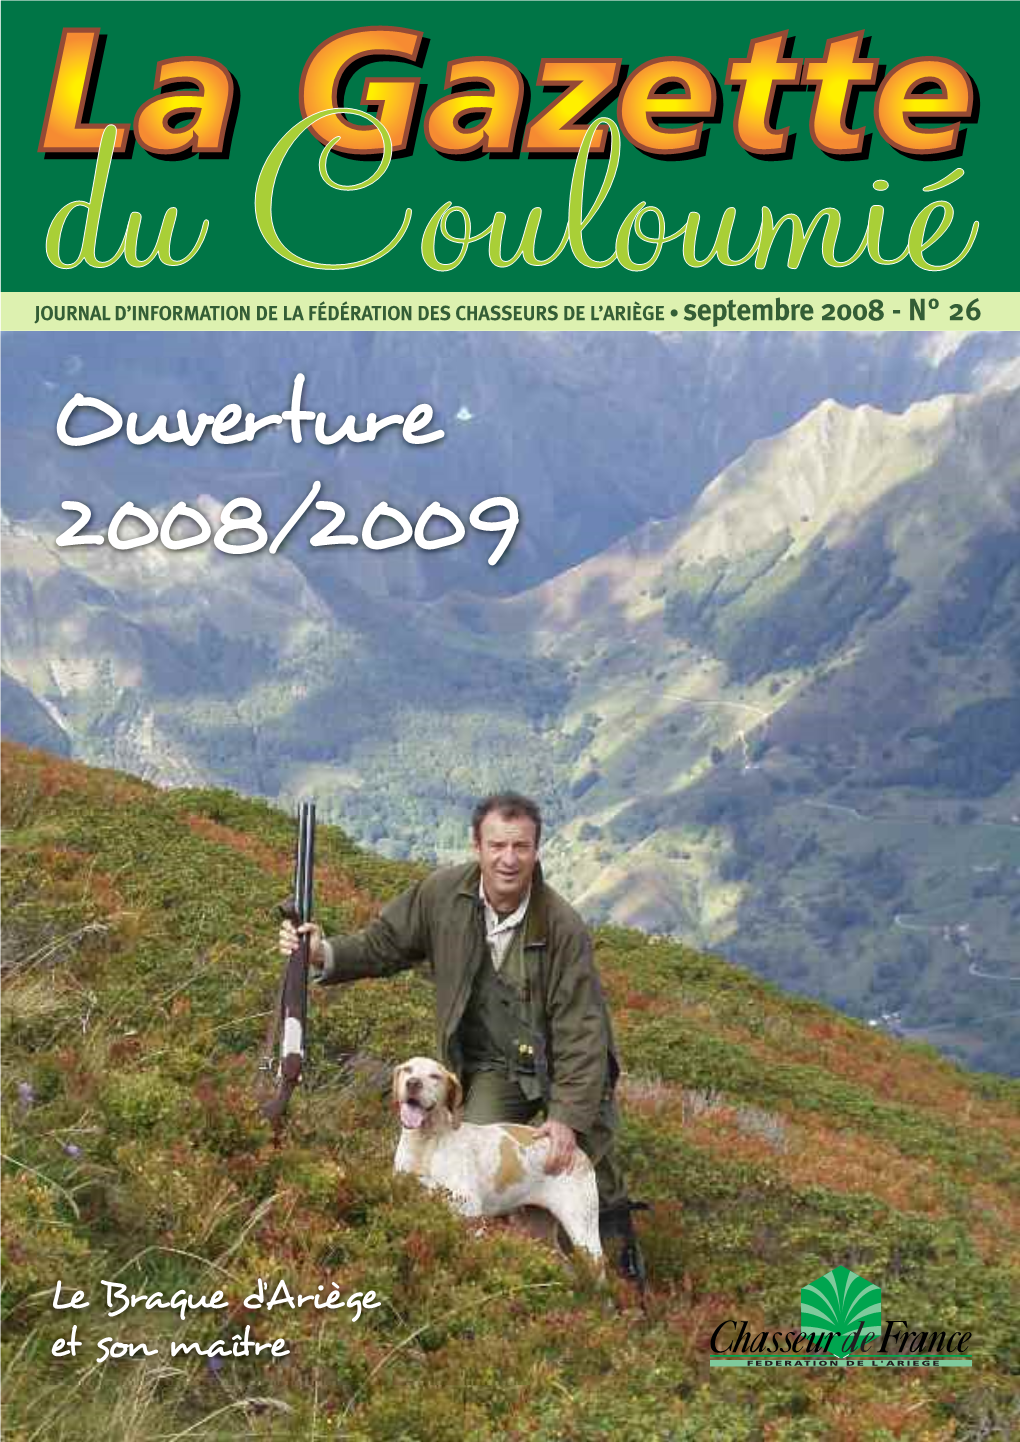 Ouverture 2008/2009